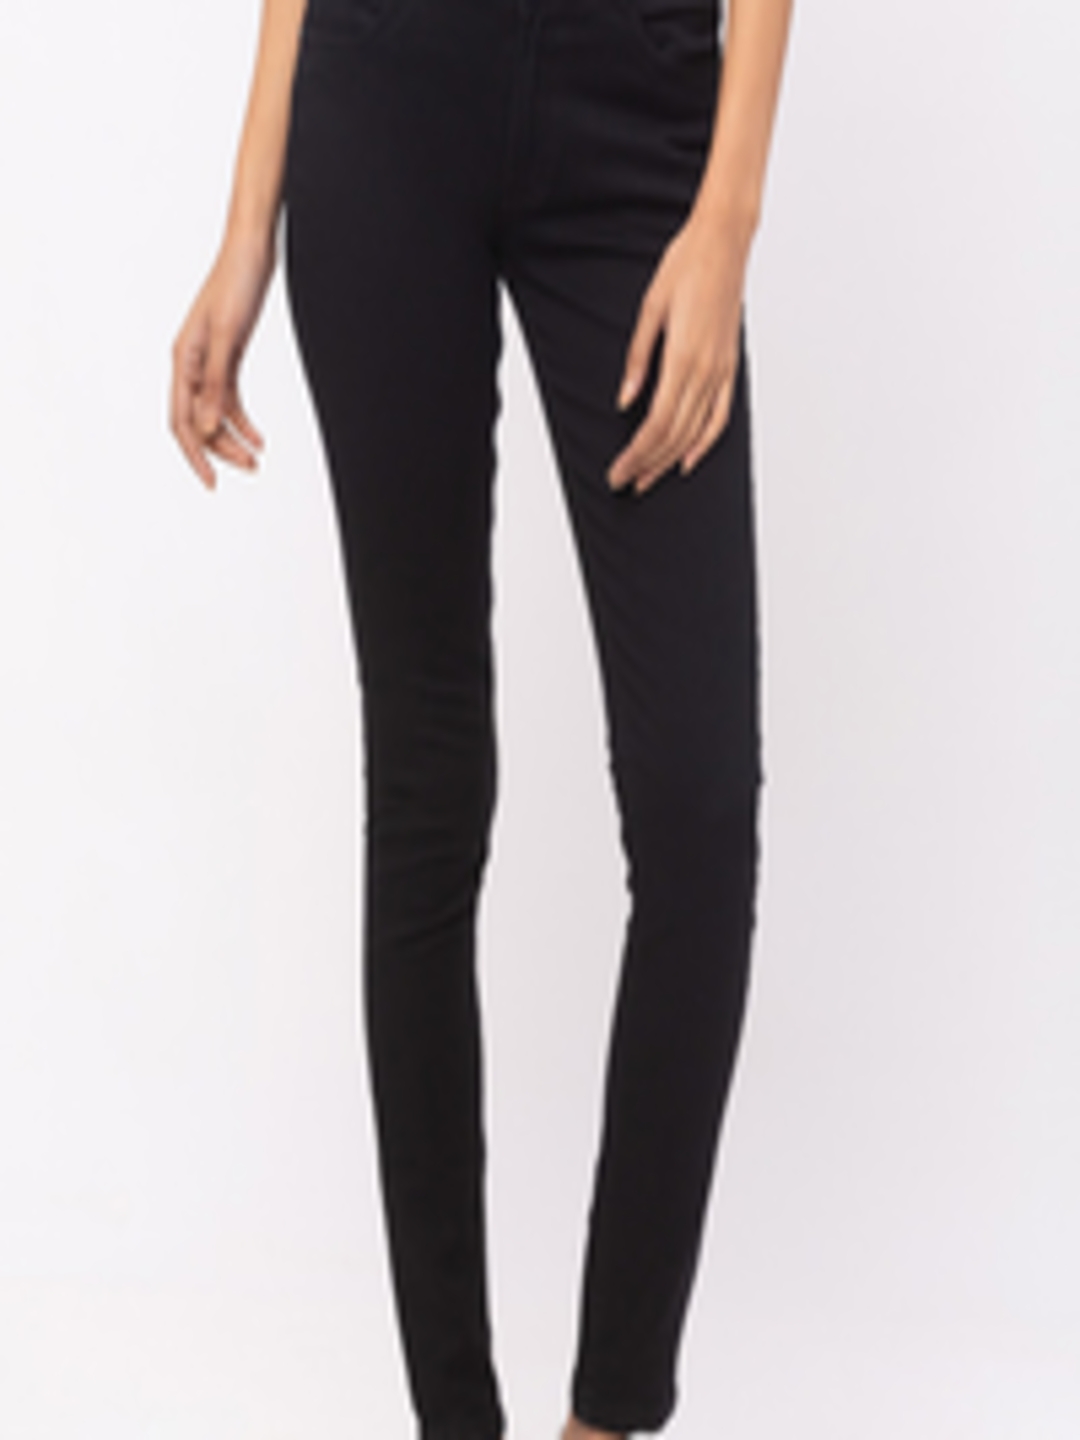 Buy ZOLA Women Black Slim Fit Jeans - Jeans for Women 18190630 | Myntra